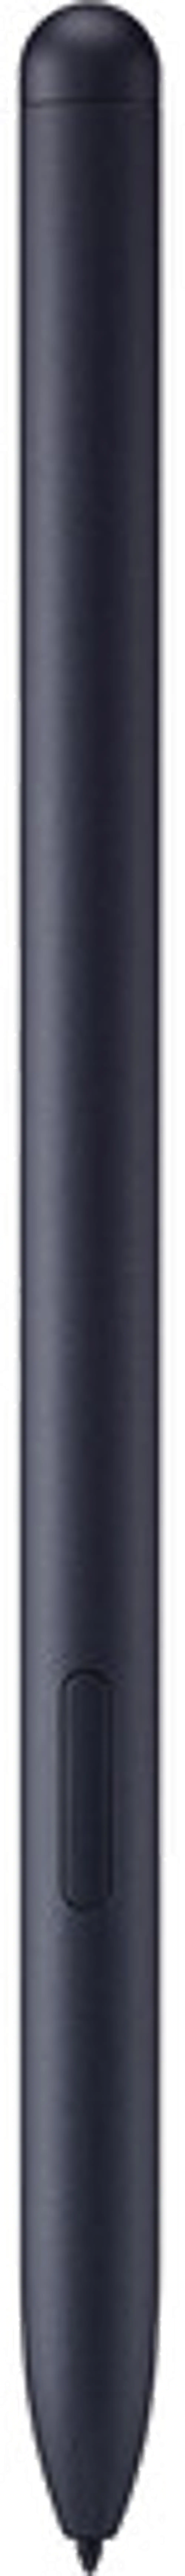 EJ-PY870BBEGUJ Samsung S Pen for Tab S7/S7+ - Black-1